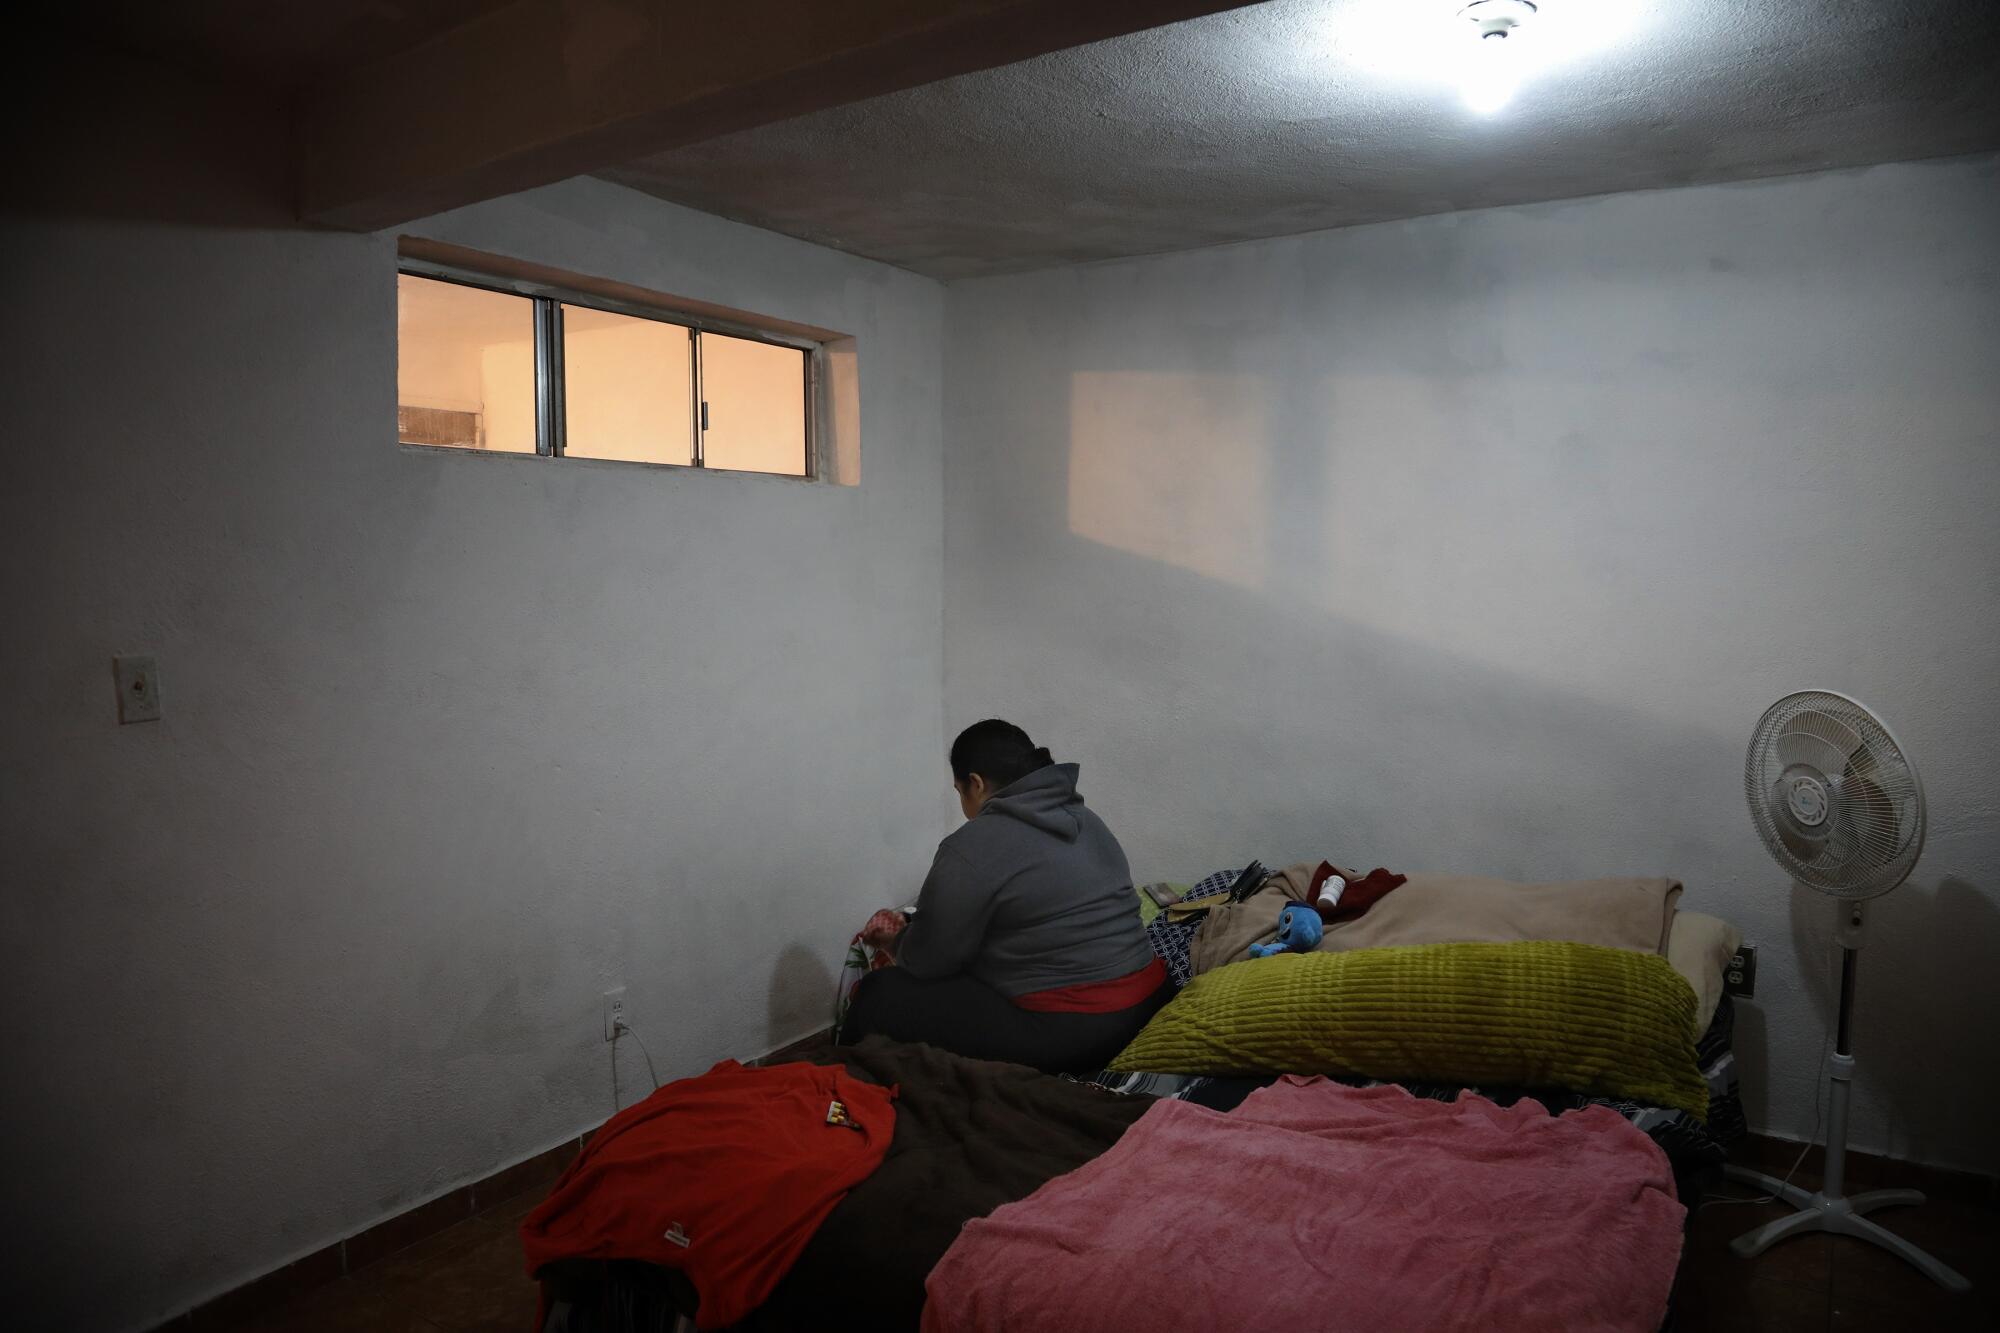 Antes de ir a trabajar, Bárbara se maquilla en el dormitorio de su departamento en Tijuana.  Bárbara es de Nicaragua y una de las decenas de miles de personas que esperan una oportunidad de obtener asilo en los Estados Unidos.